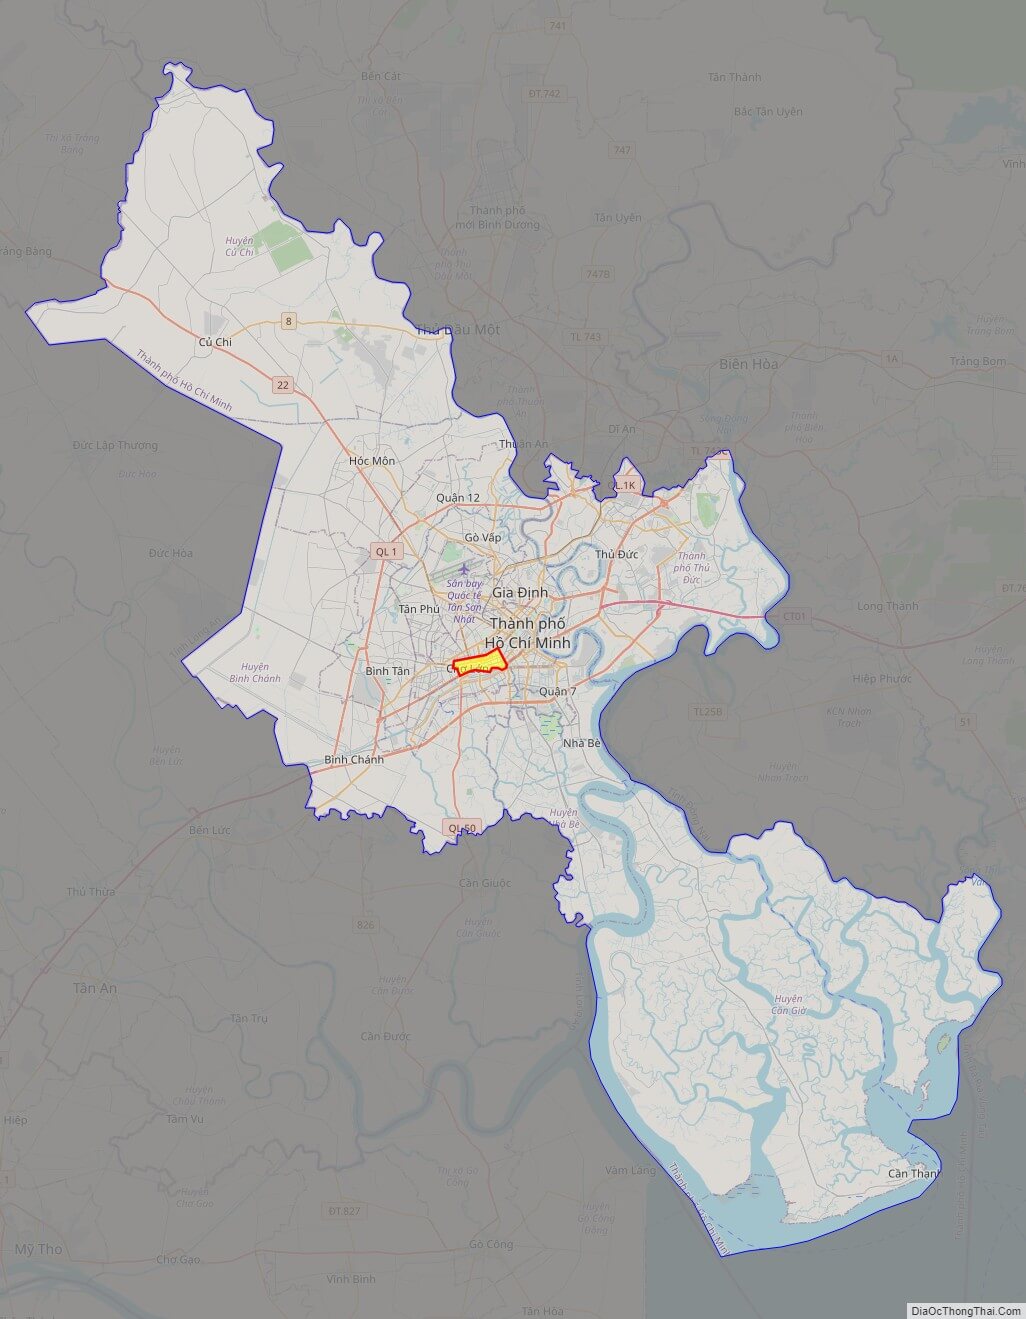 Bạn muốn khám phá thành phố Hồ Chí Minh theo từng khu vực và quận một cách dễ dàng? Hãy tìm hiểu bản đồ TP. HCM theo quận mới nhất trong năm